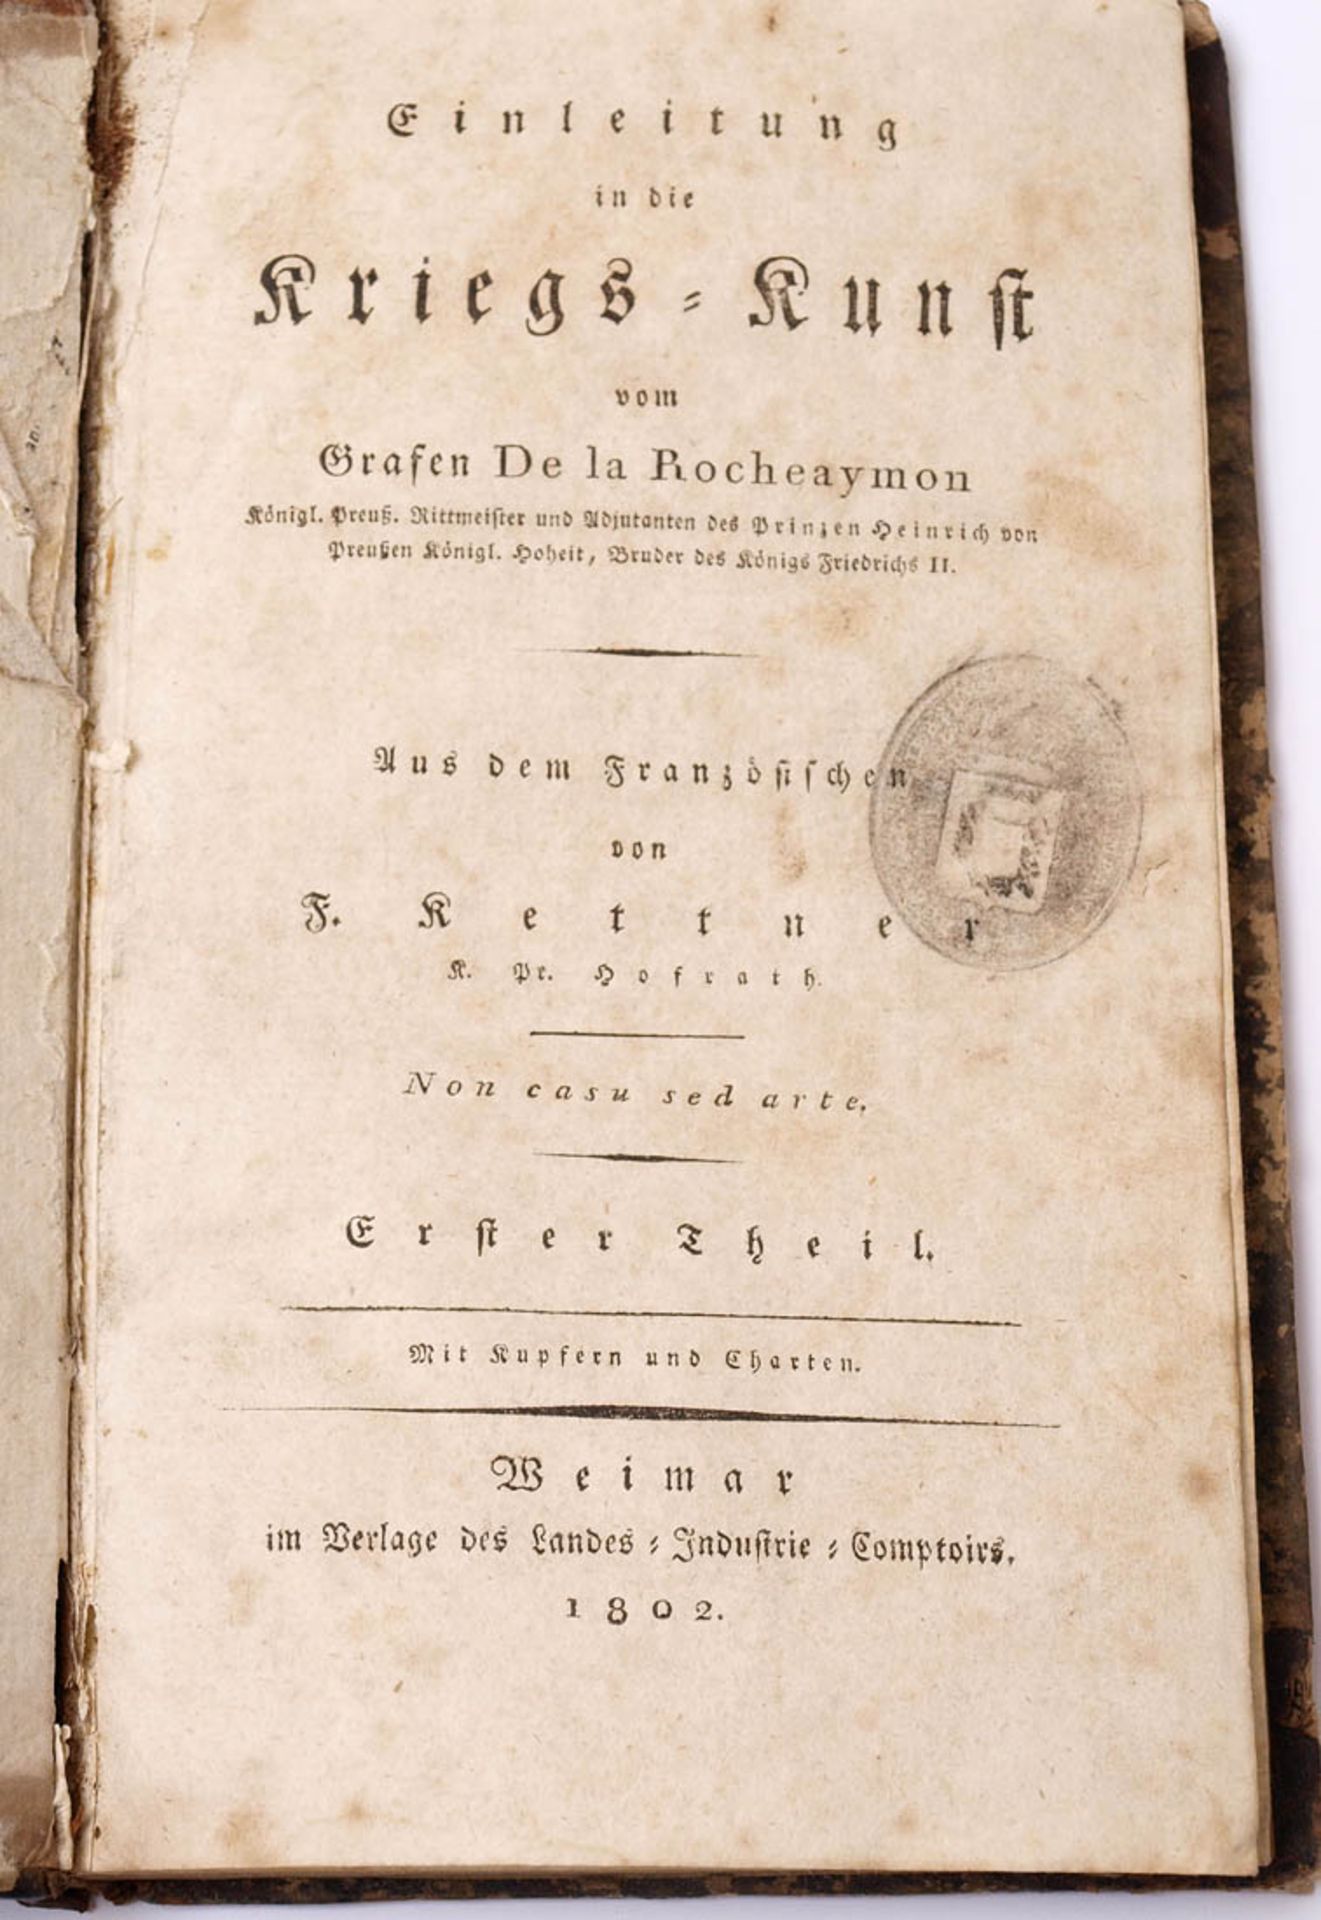 Graf de la Rocheaymon: Einleitung in die KriegskunstWeimar 1802. Halbledereinband mit Goldprägung.